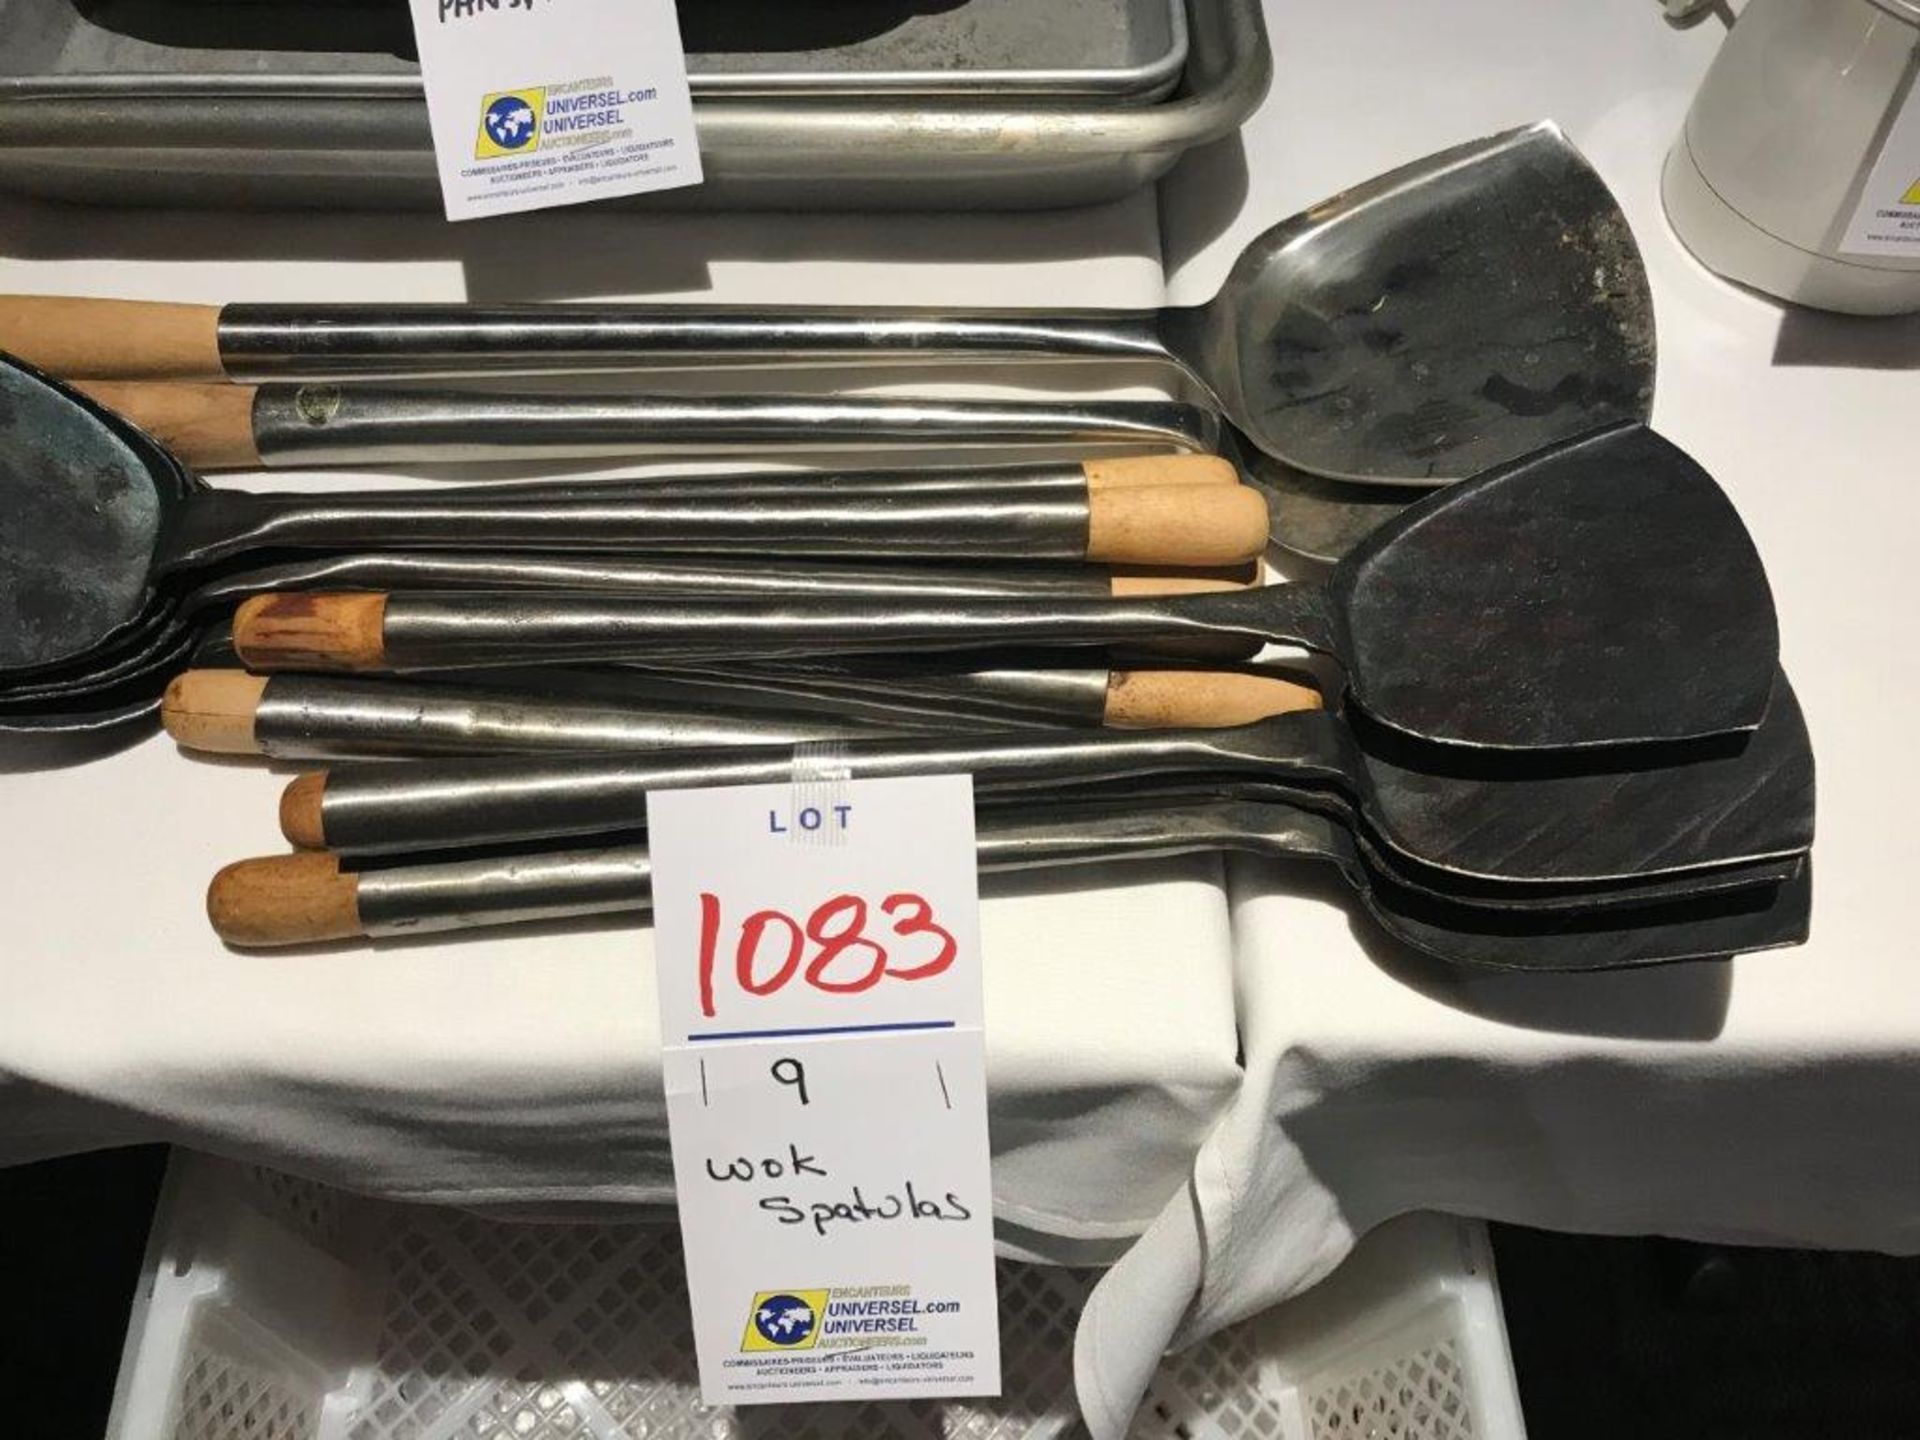 Wok spatulas